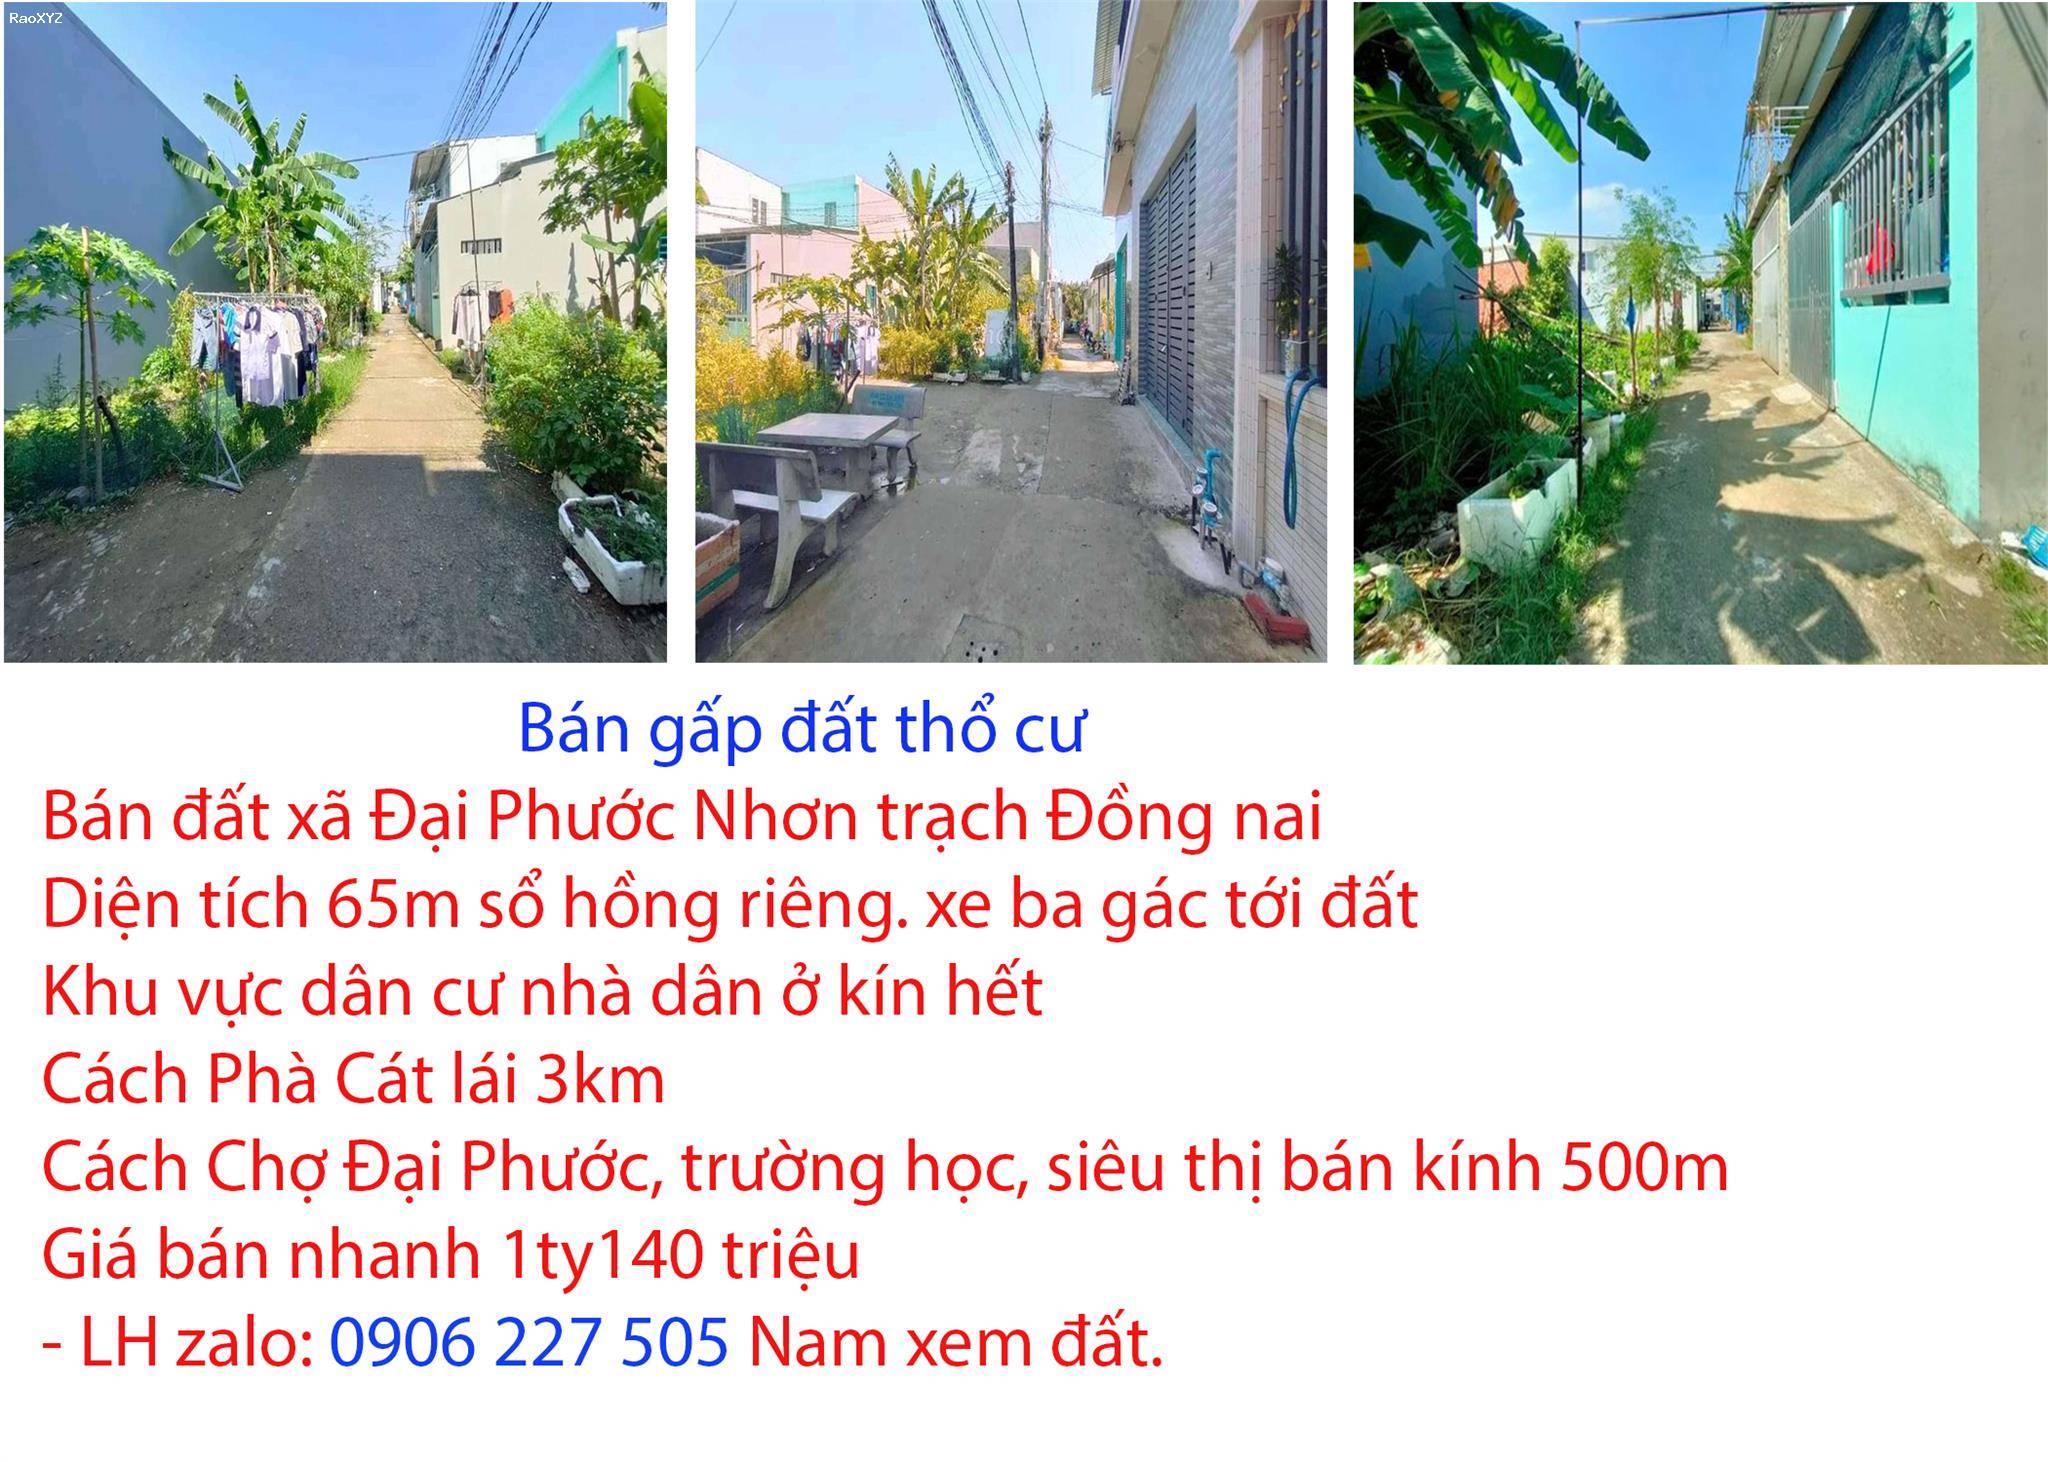 Bán đất xã Đại Phước Nhơn trạch Đồng nai, cách phà cát lái 2km, giá 1 tỷ 90 triệu